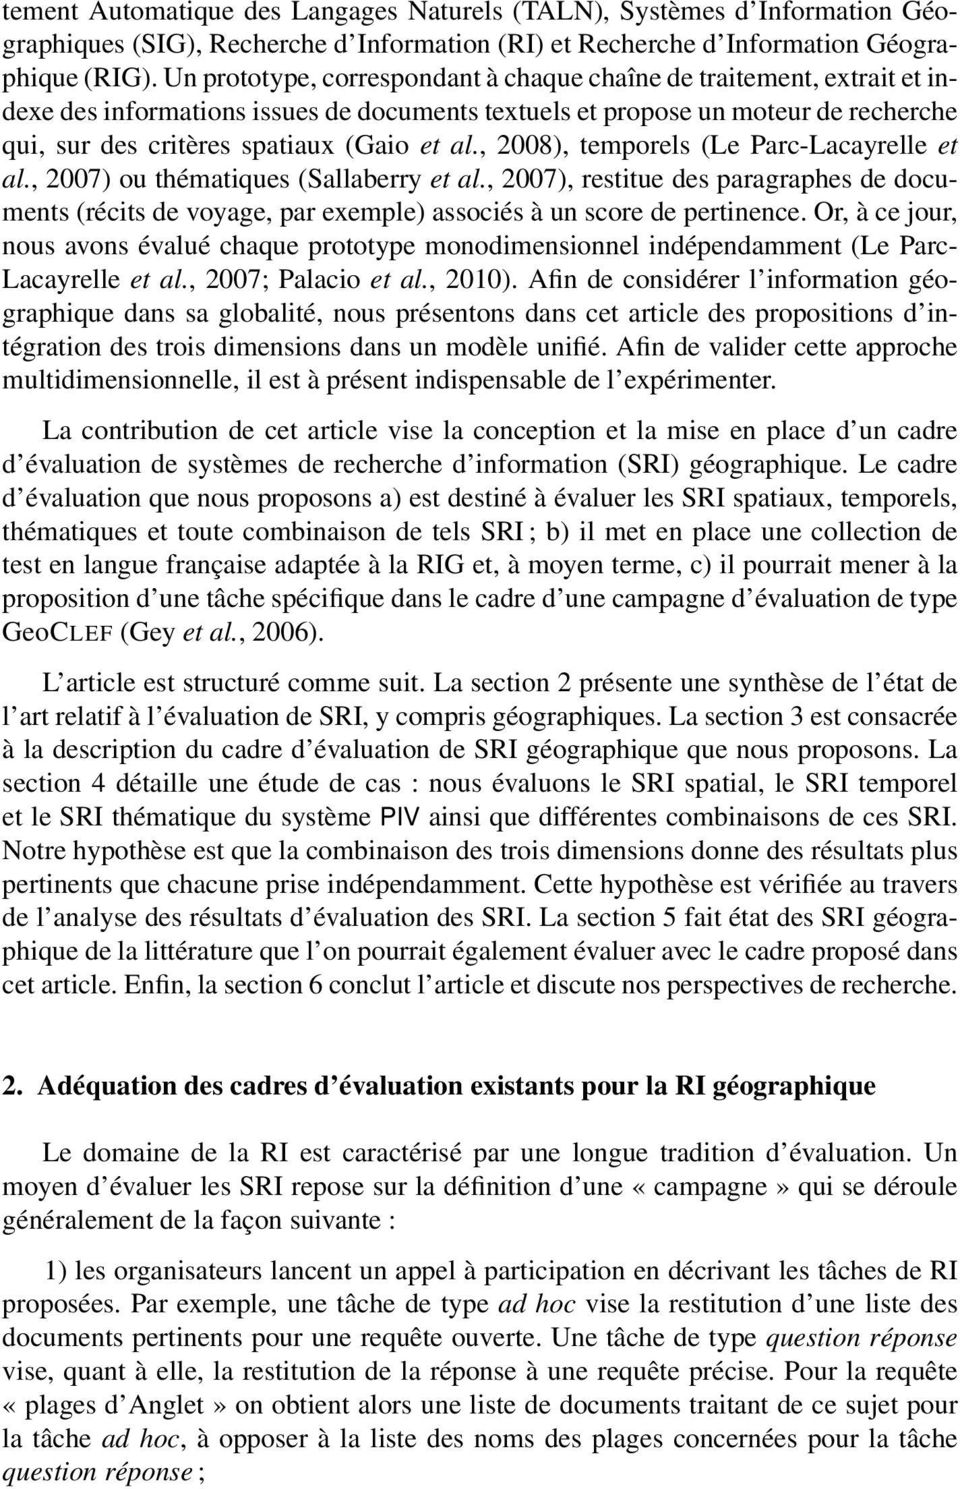 , 2008), temporels (Le Parc-Lacayrelle et al., 2007) ou thématiques (Sallaberry et al., 2007), restitue des paragraphes de documents (récits de voyage, par exemple) associés à un score de pertinence.